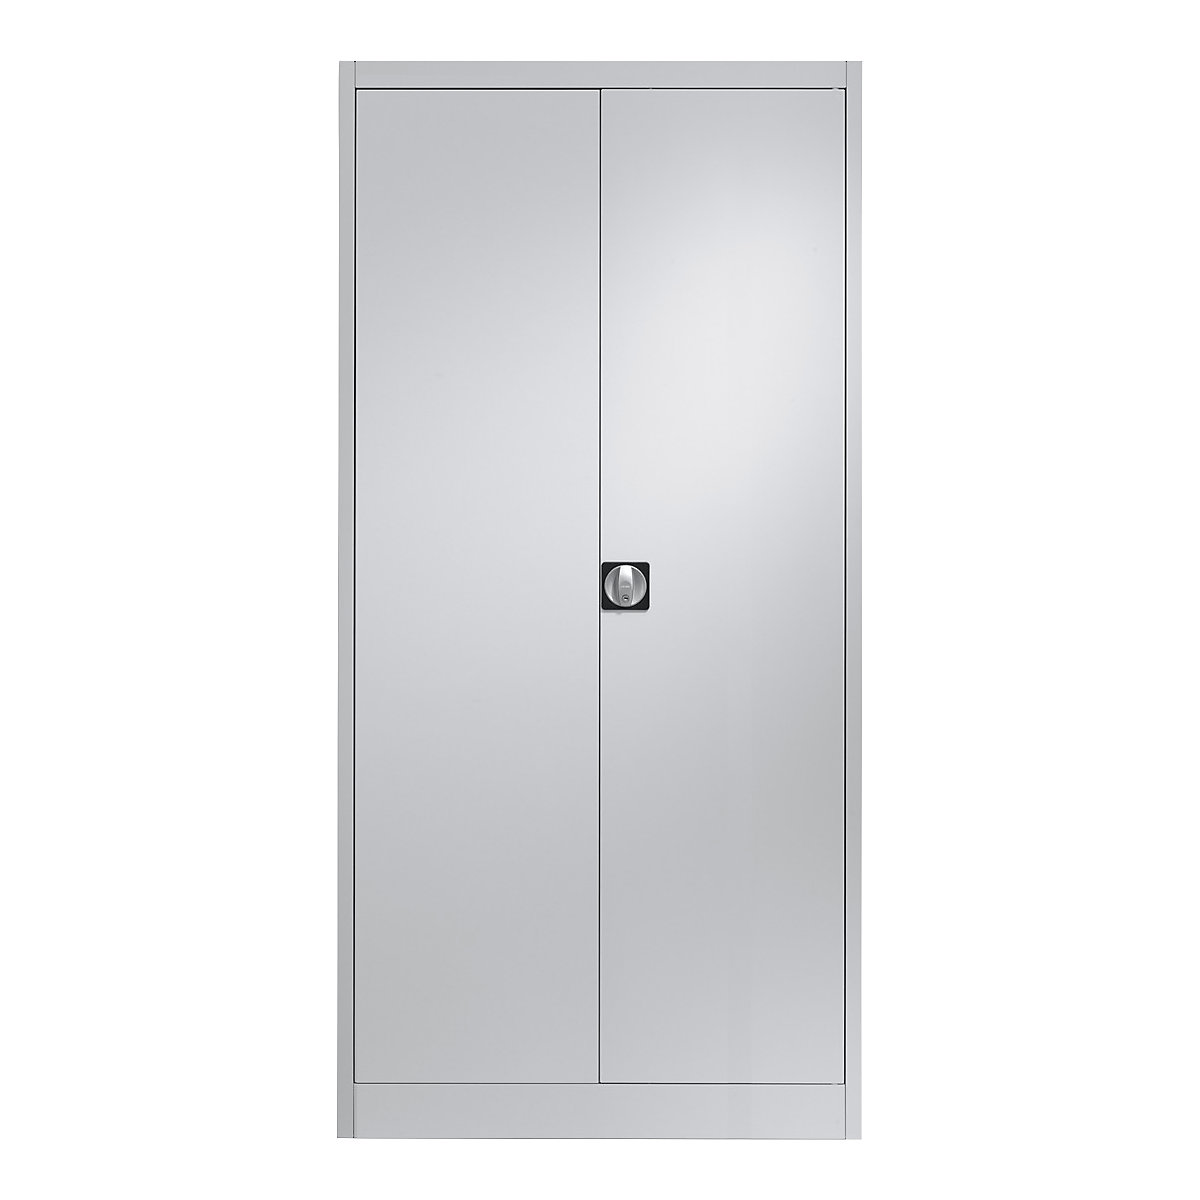 Ocelová skříň s otočnými dveřmi – mauser, 4 police, h 500 mm, světle šedá-6